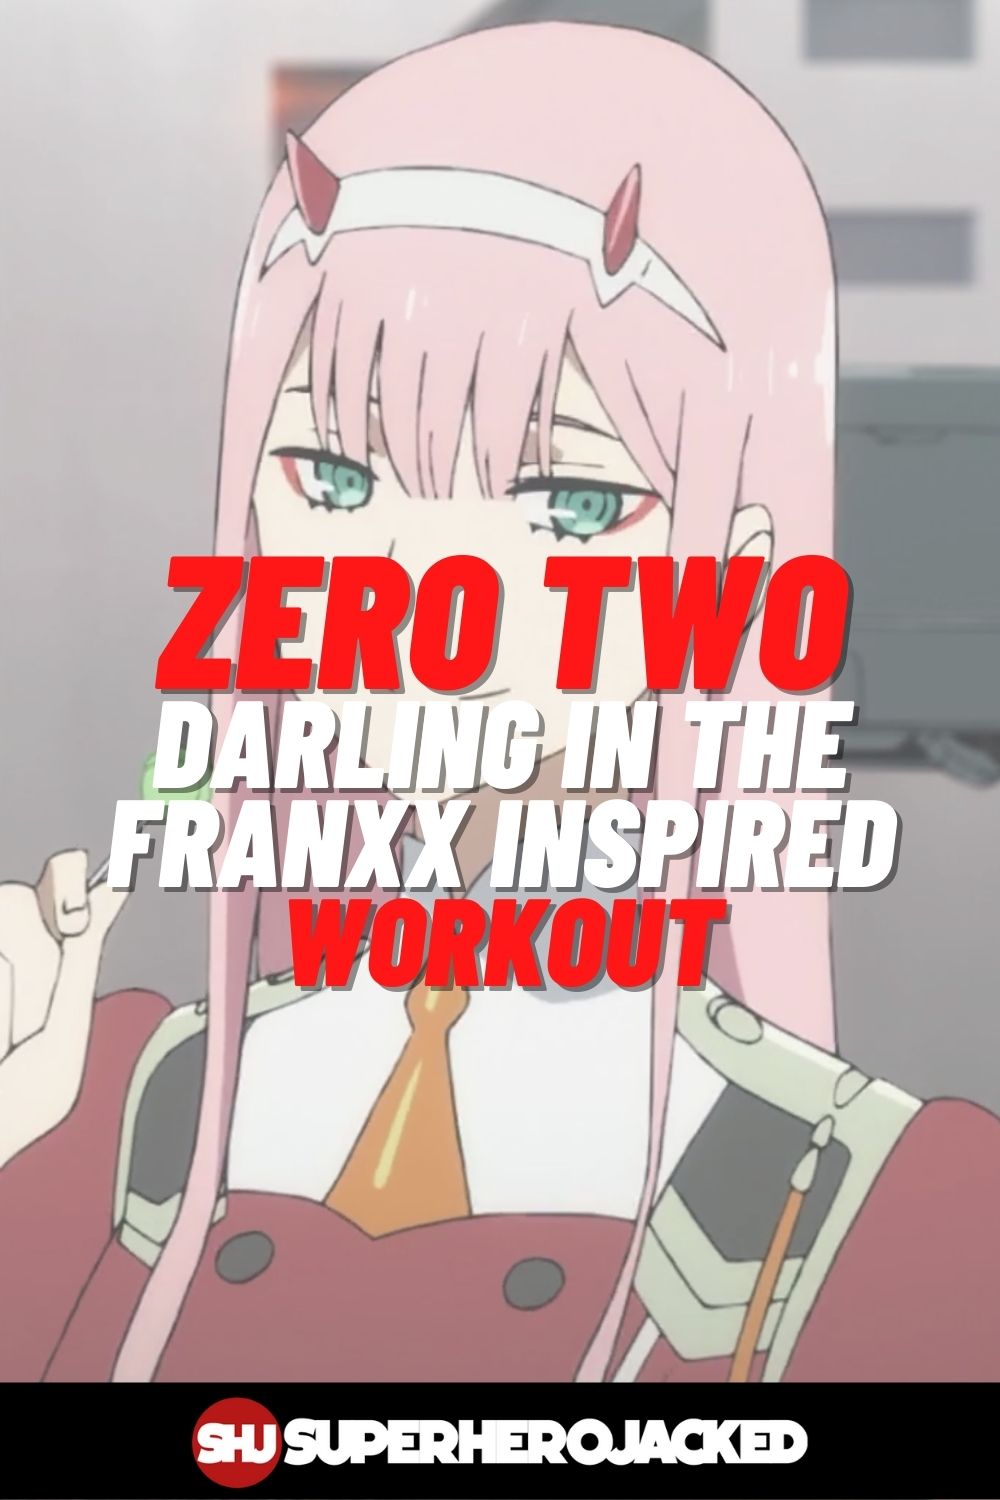 Zero Two Workout 1